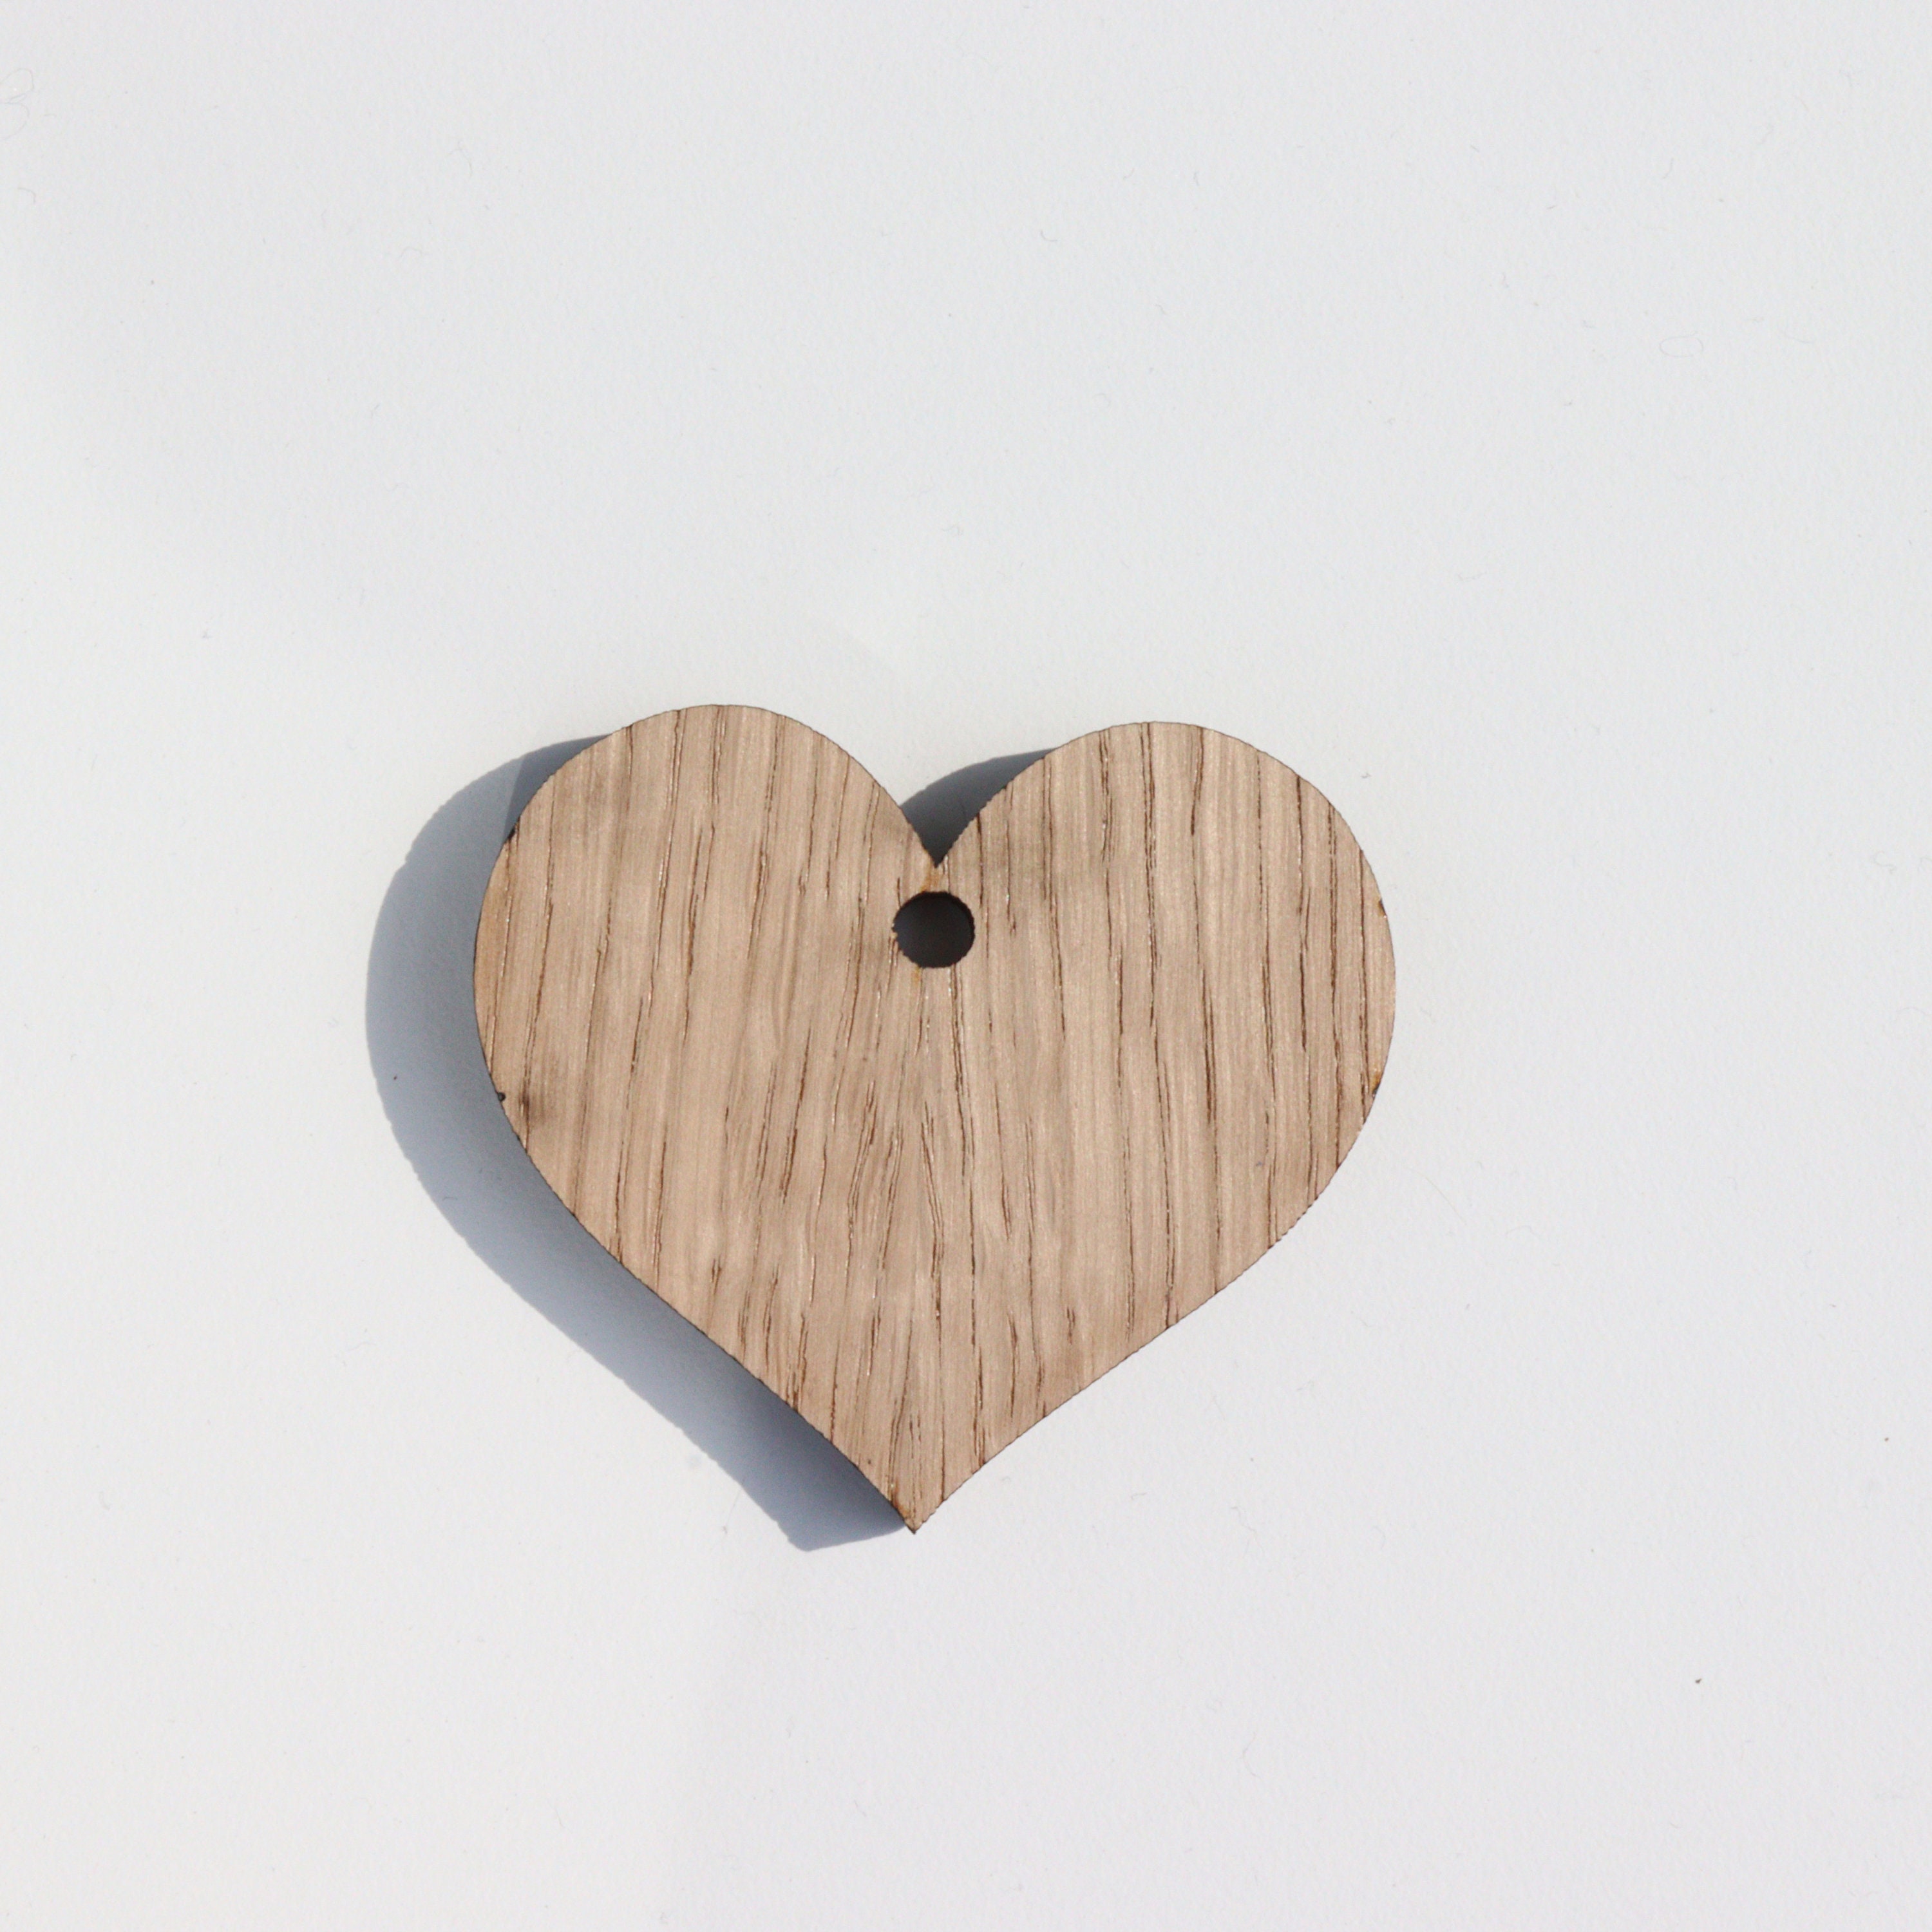 13cm Wooden Heart Craft Blank Wooden Heart Sign With Hole Hanging Wooden  Heart Oak Wooden Heart Blank Hanging Sign Craft Blanks 